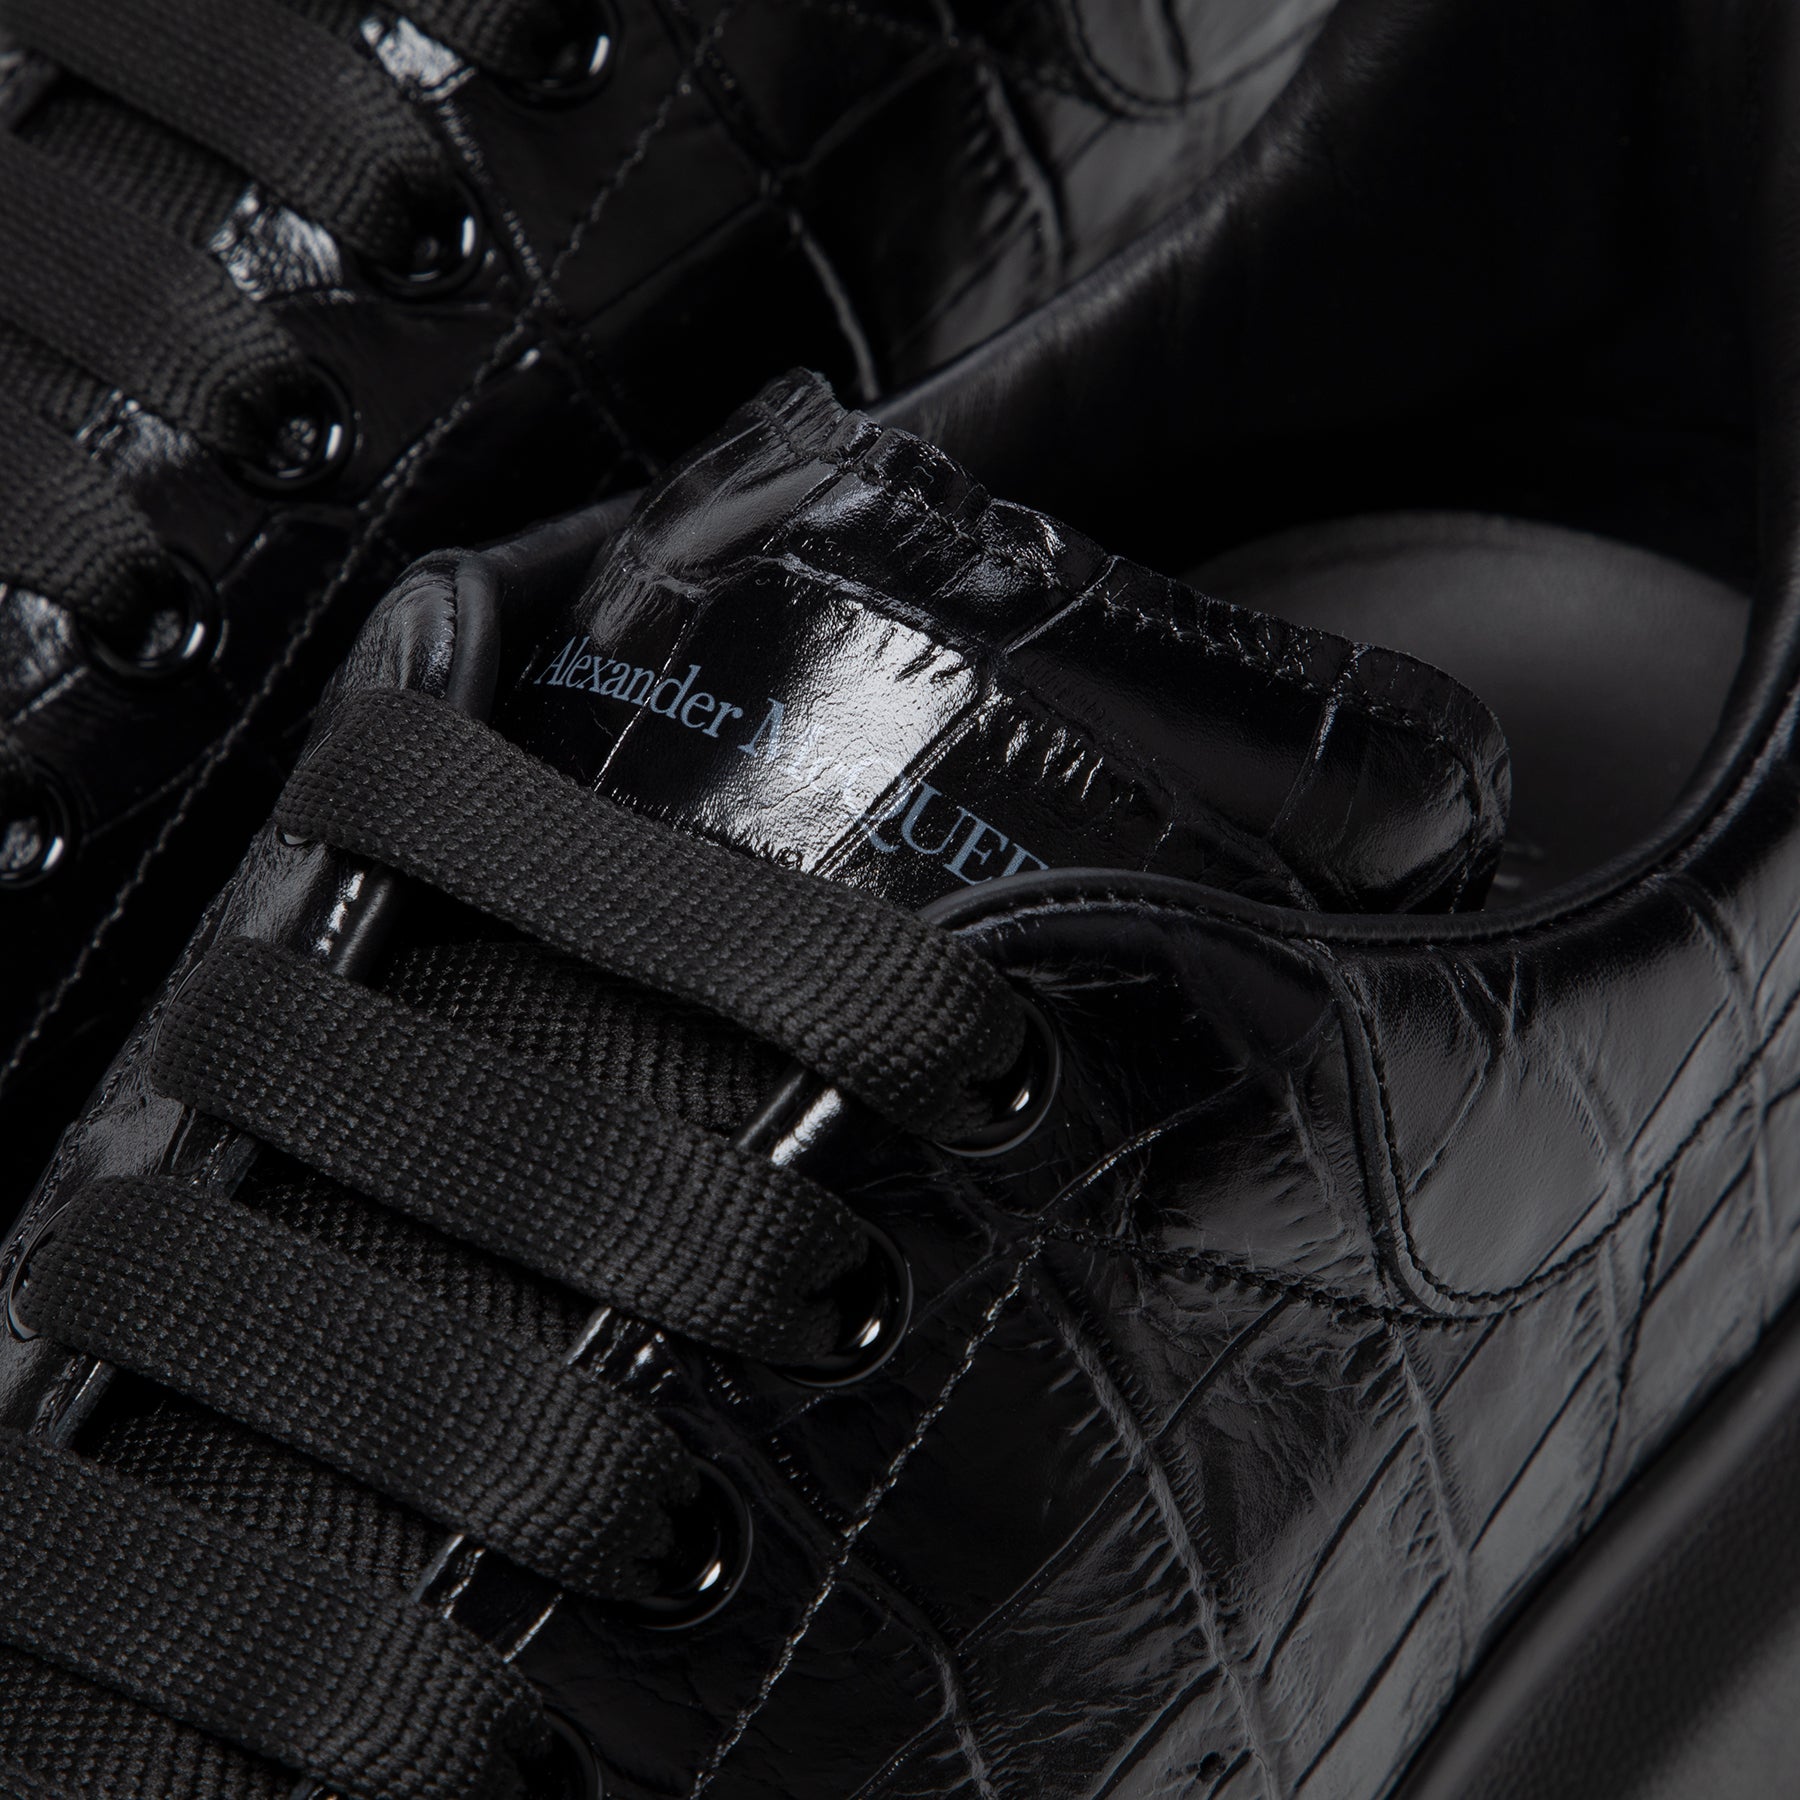 ALEXANDER MCQUEEN Oversized black leather sneakers